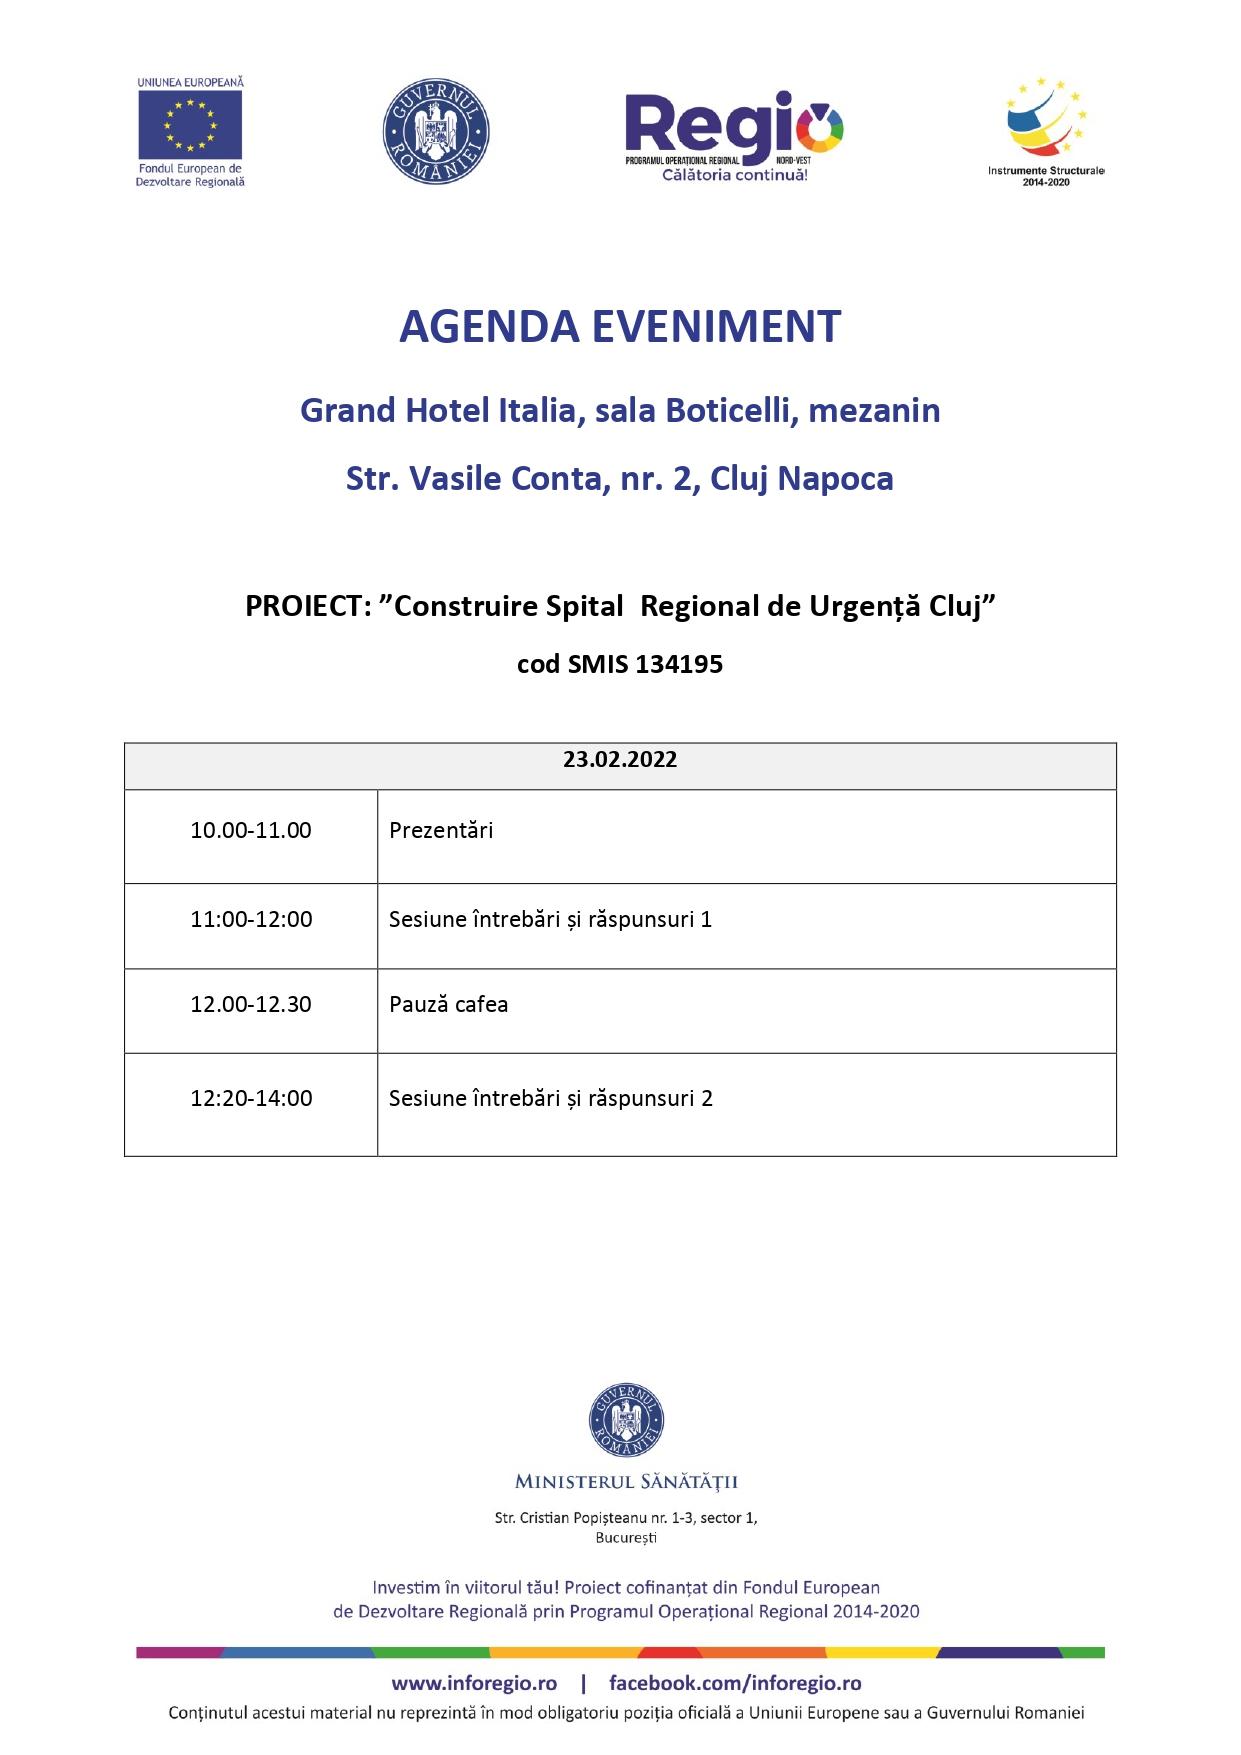 agenda conferinta 23.02.2022_page-0001 (1).jpg